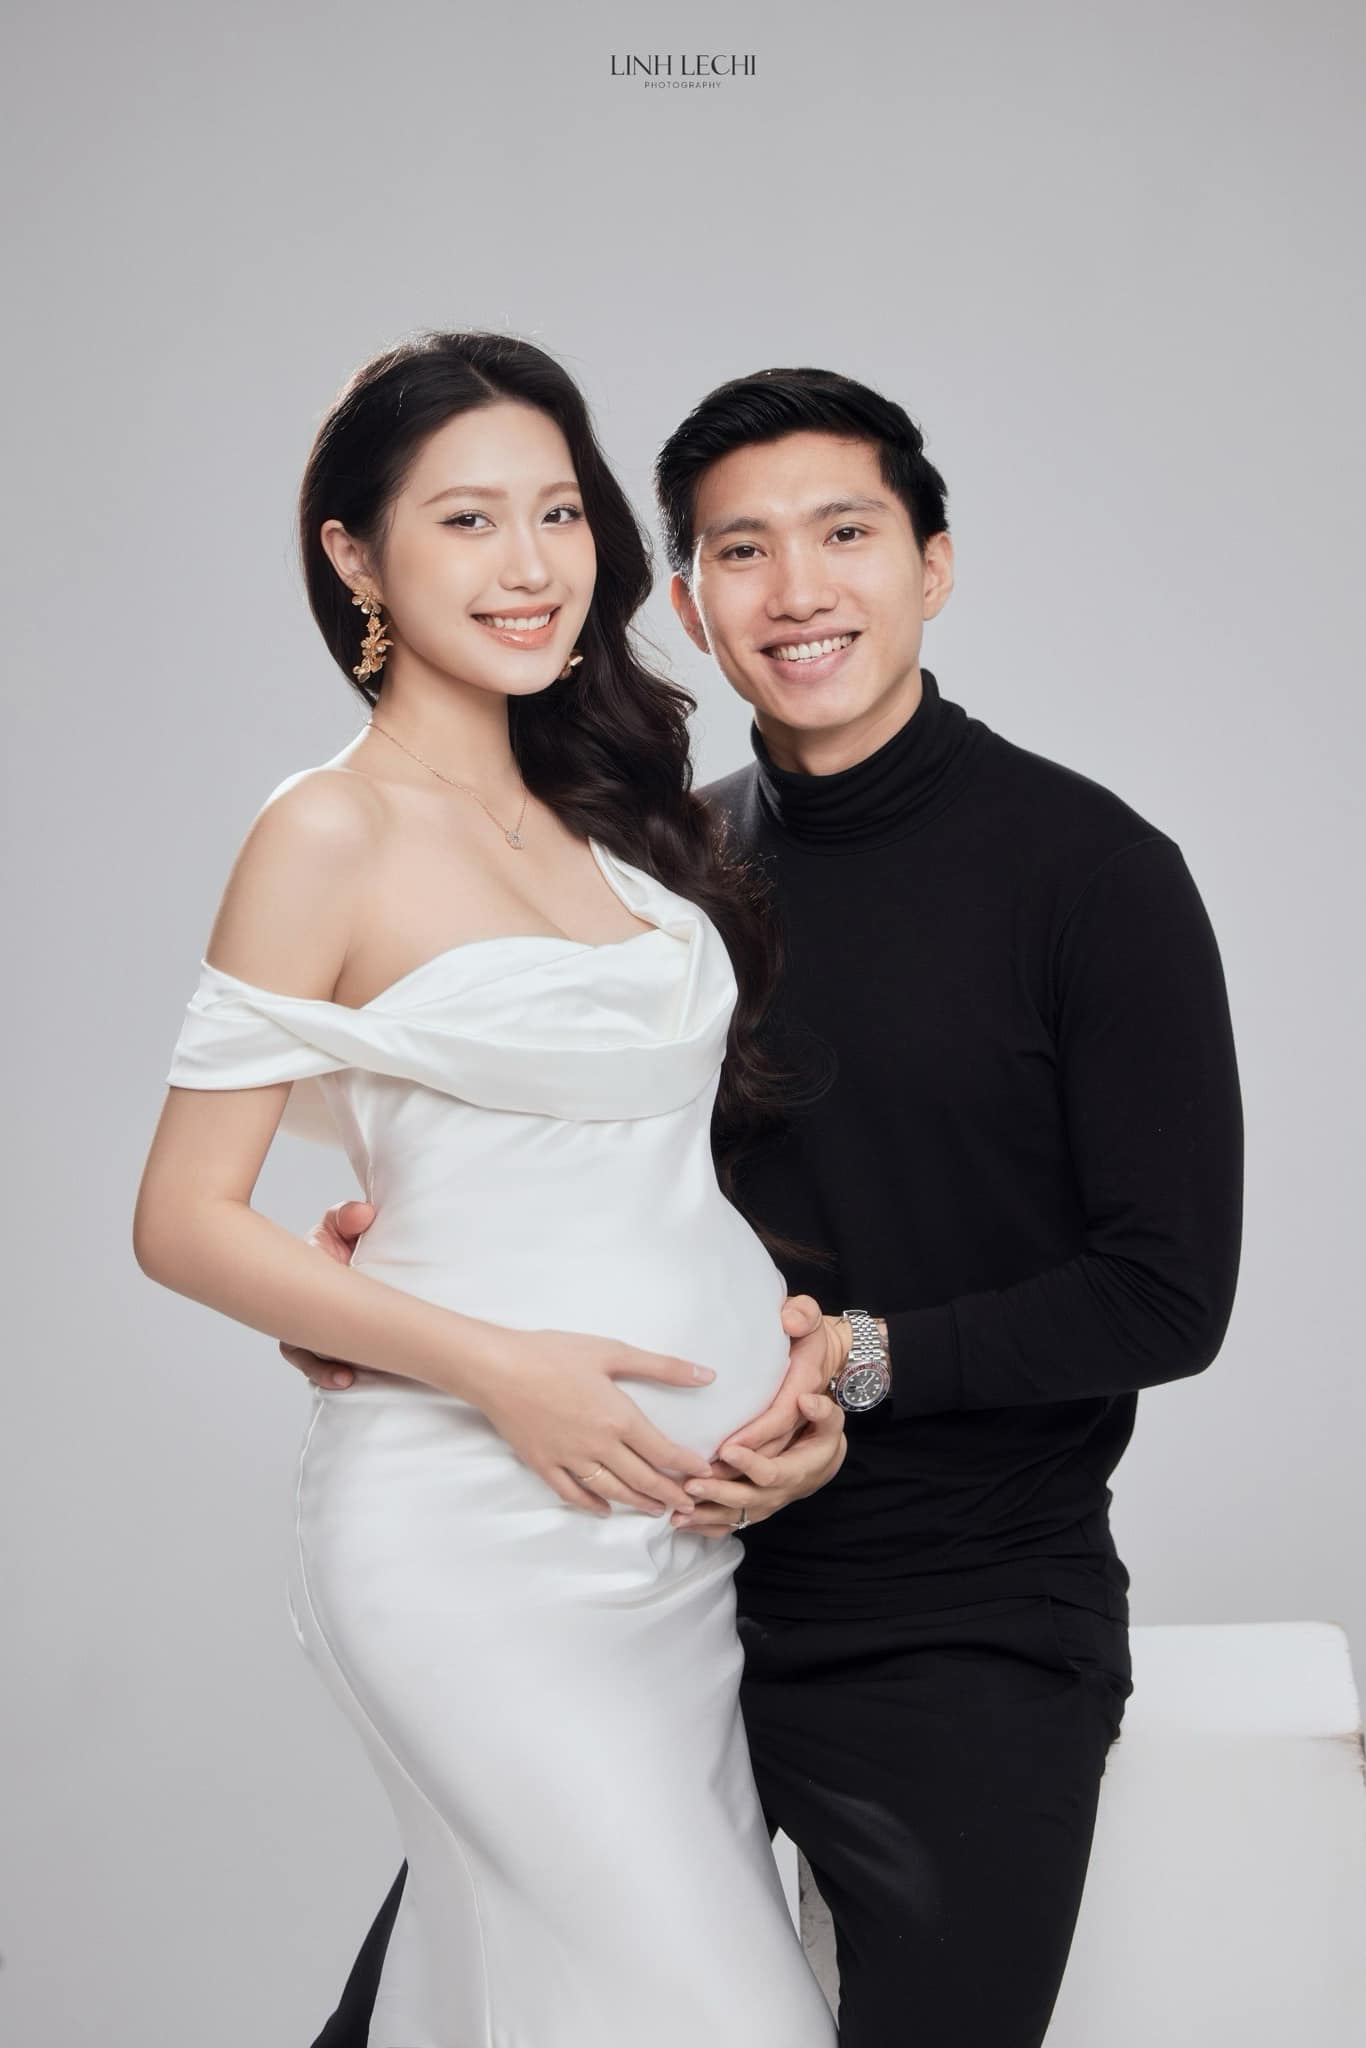 Hoà Minzy chúc mừng vợ Đoàn Văn Hậu mang thai, em bé 'cực phẩm' sắp chào đời - ảnh 2